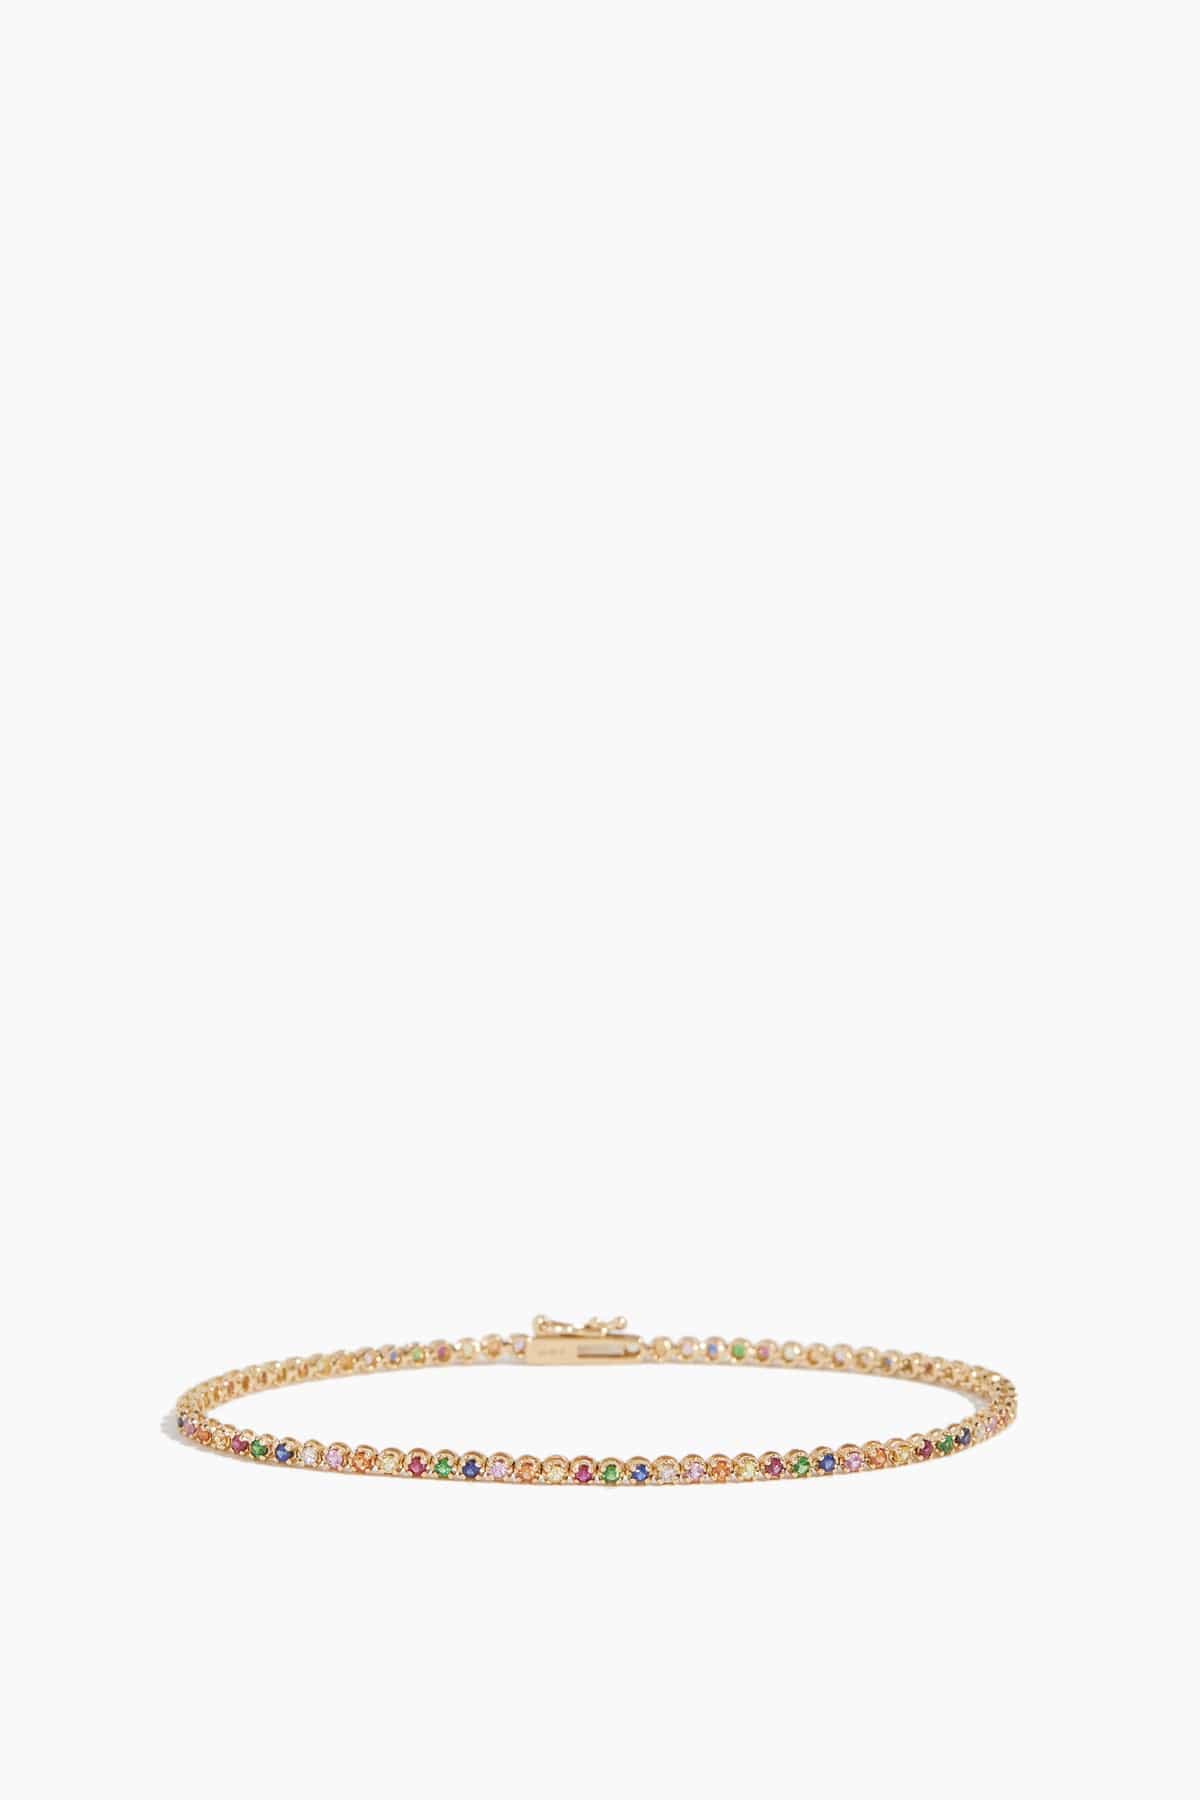 Vintage La Rose Bracelets Rainbow Tennis Bracelet in 14k Yellow Gold